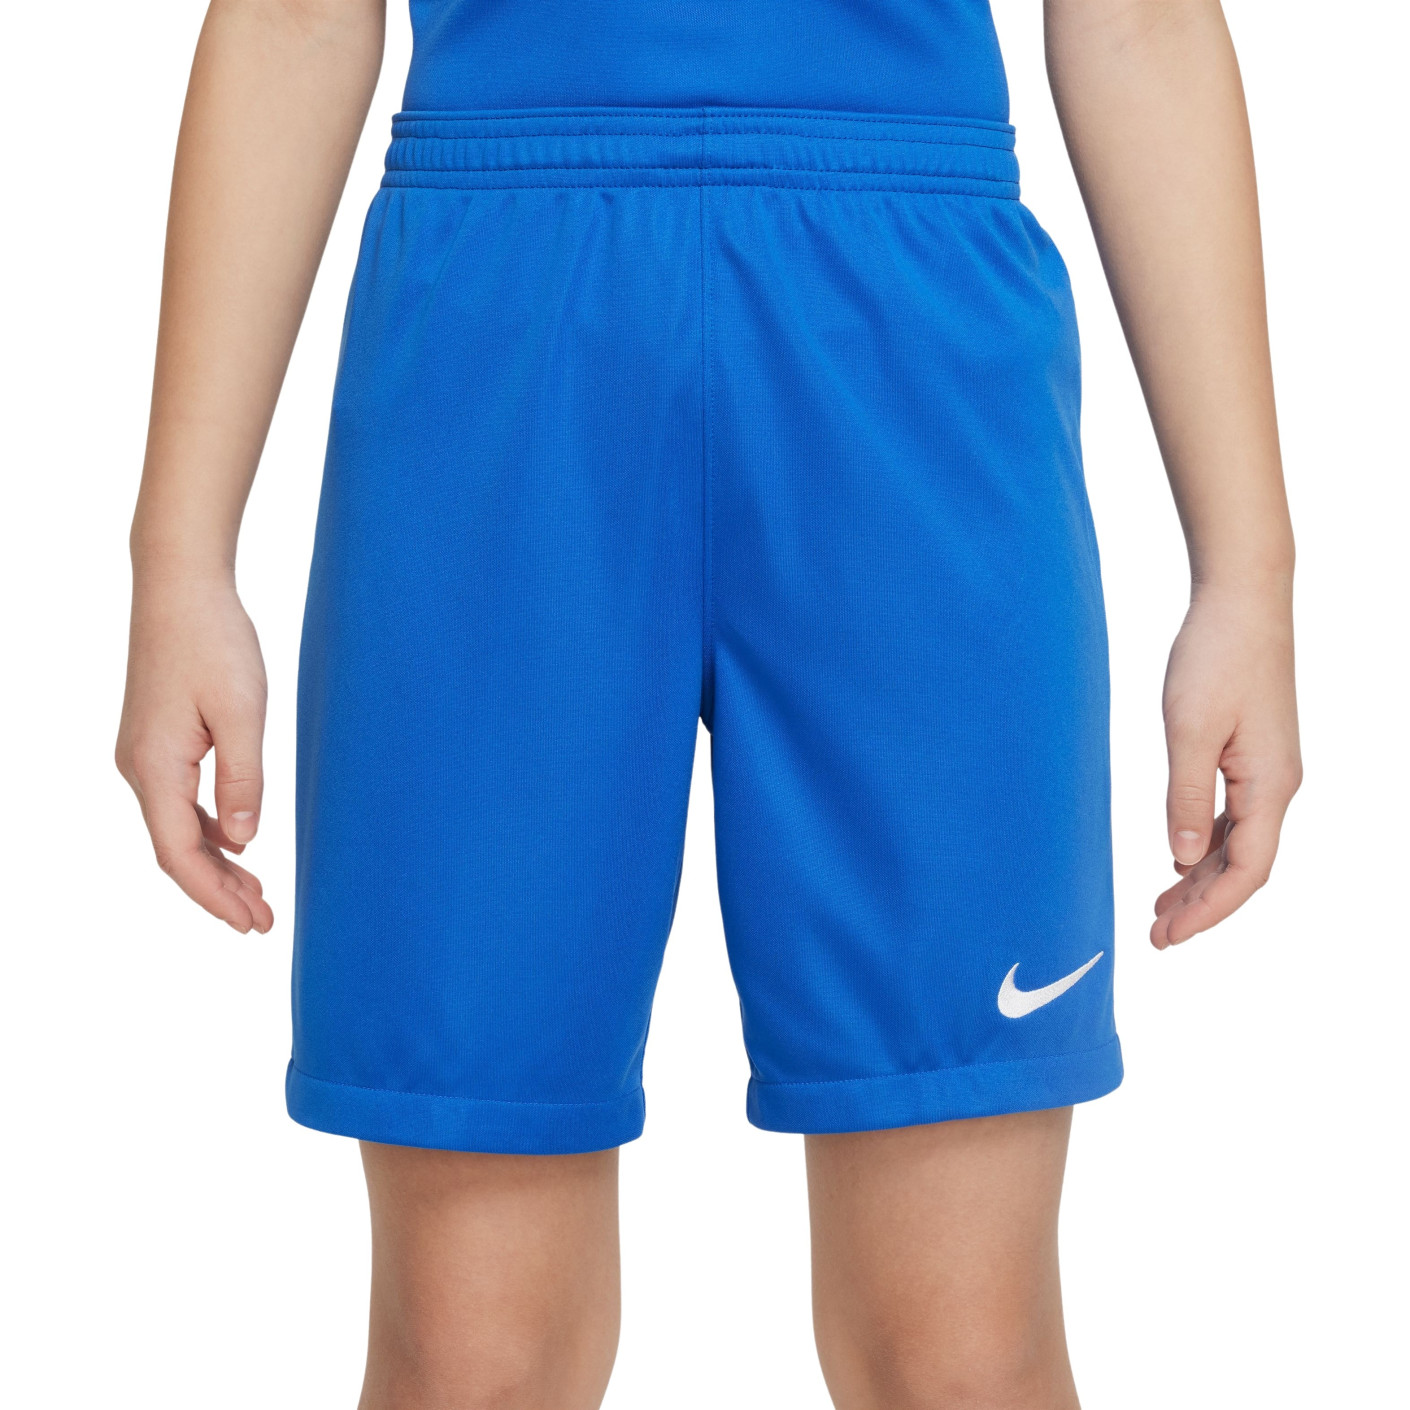 Nike League III Voetbalbroekje Kids Royal Blauw Wit